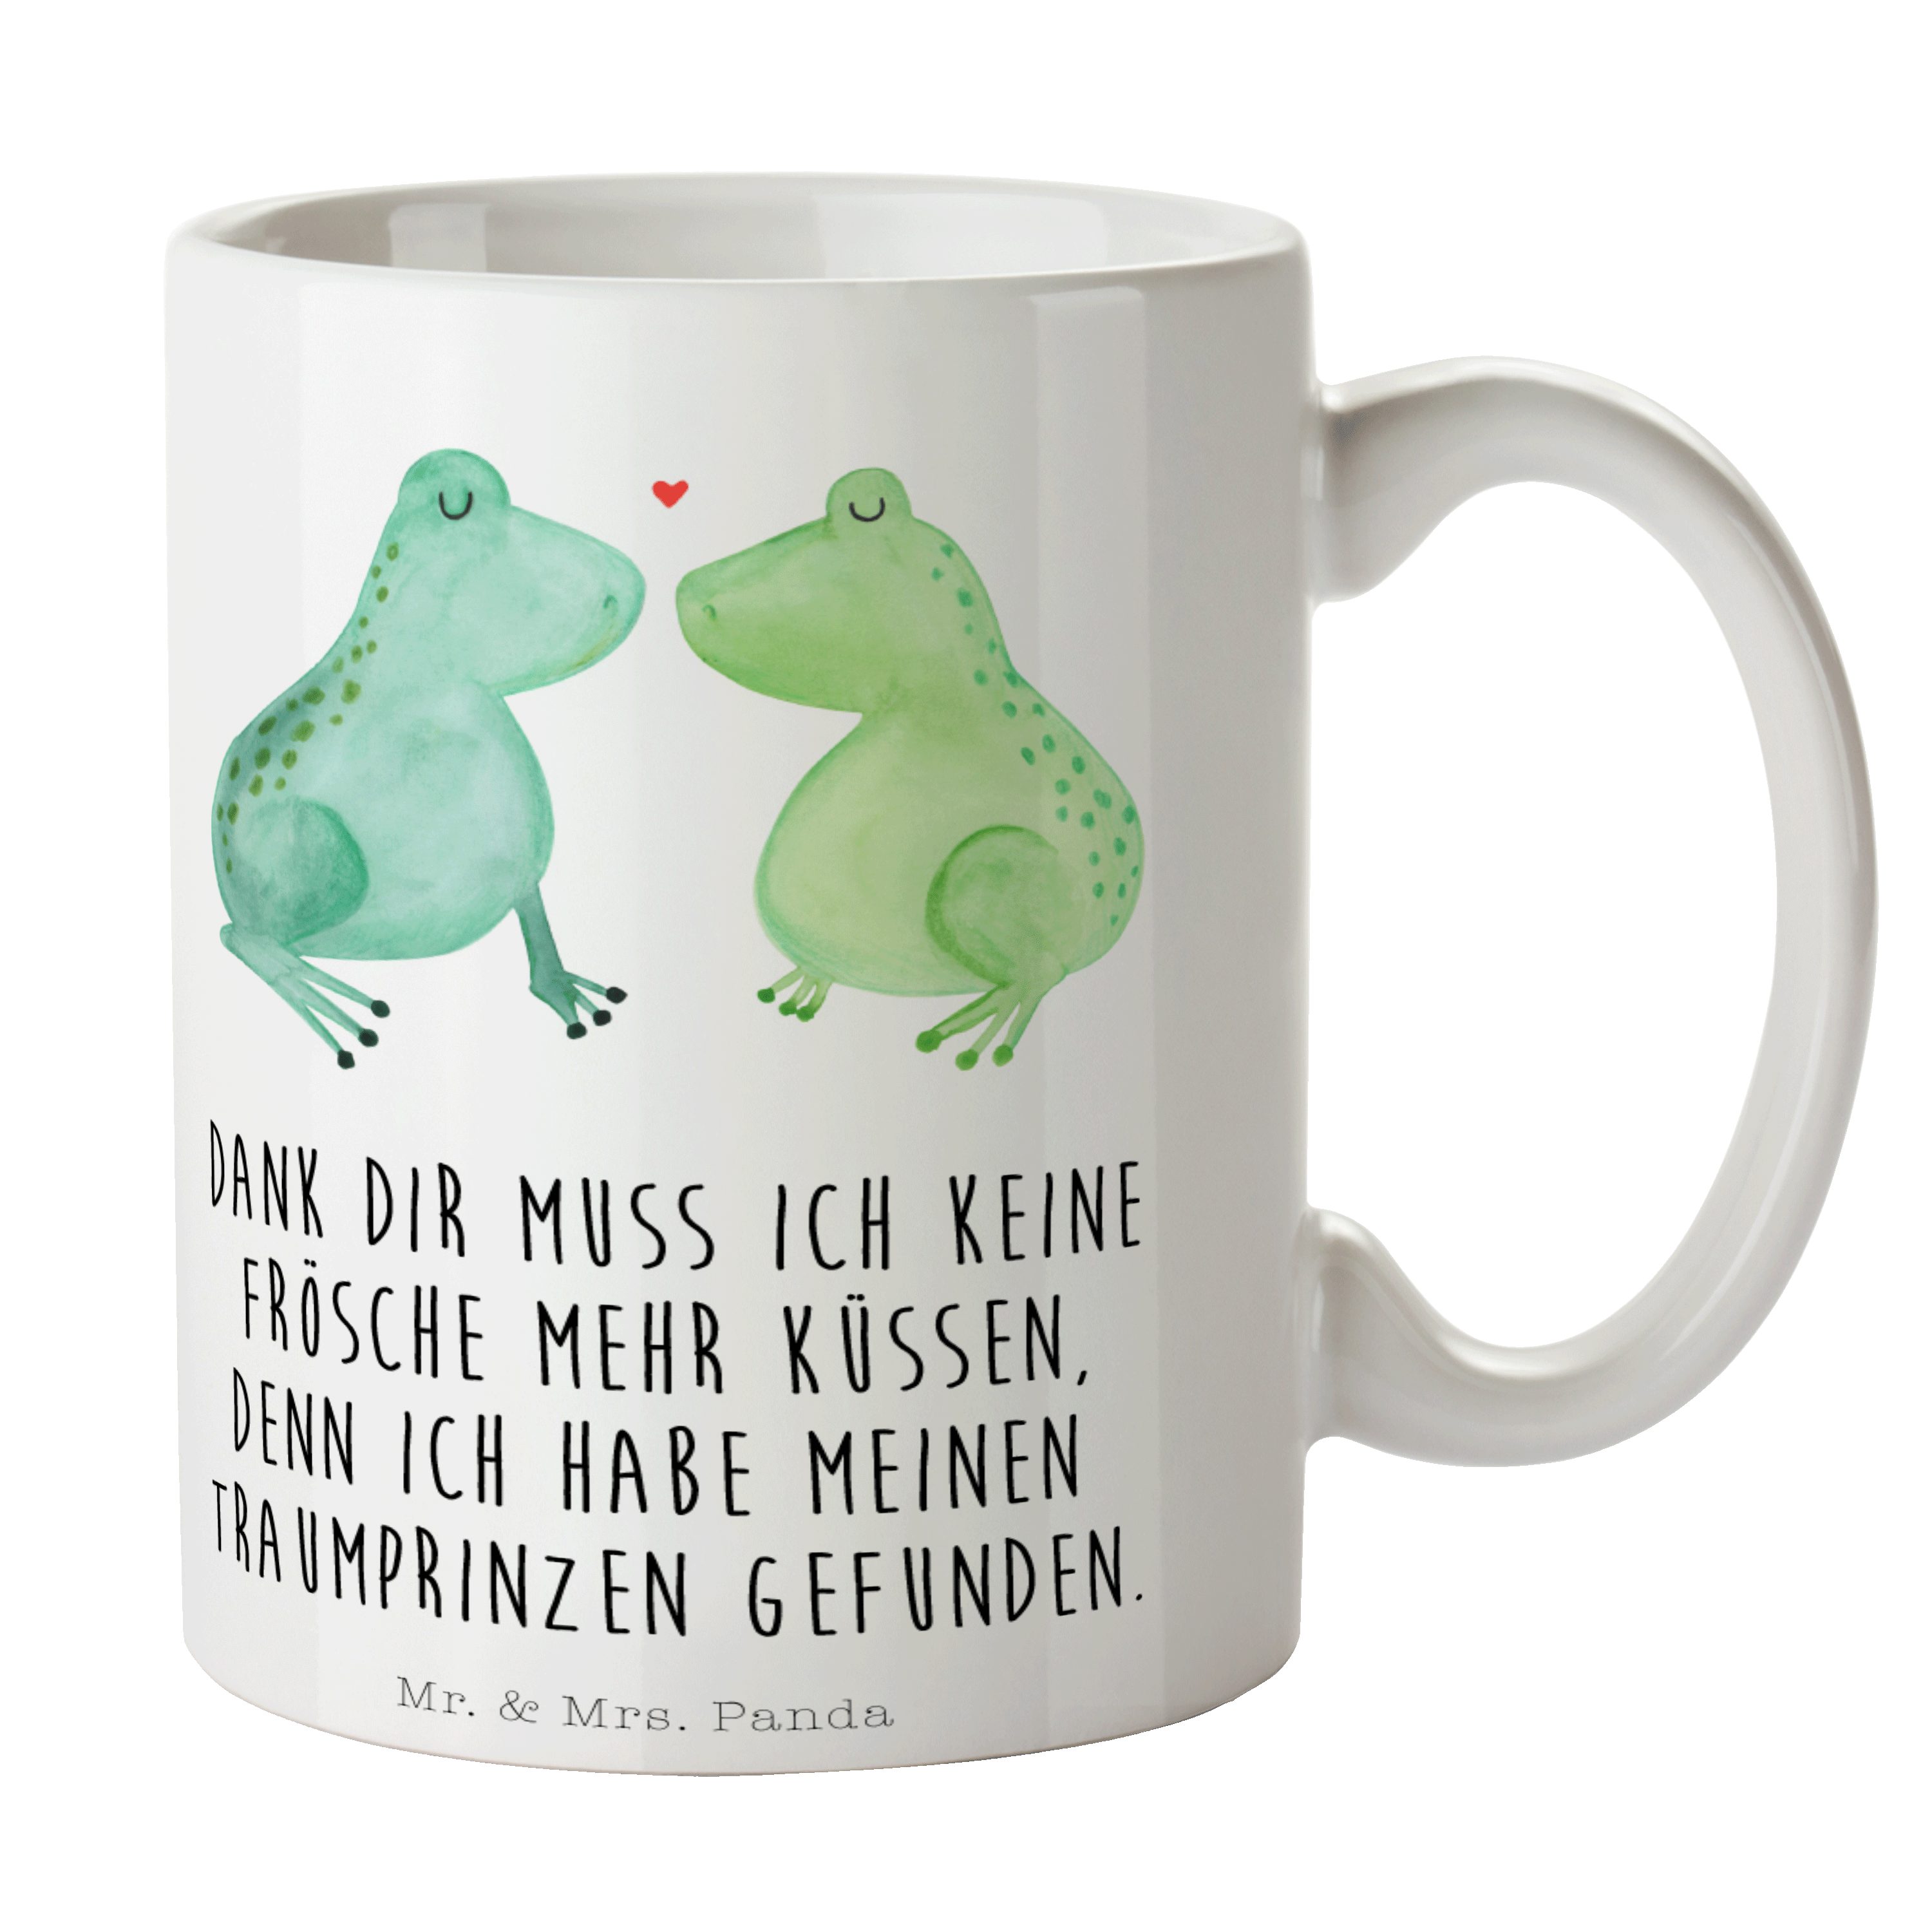 Mr. & Mrs. Panda Tasse Frosch Liebe - Weiß - Geschenk, küssen, Jahrestag, Hocheitstag, Verlo, Keramik